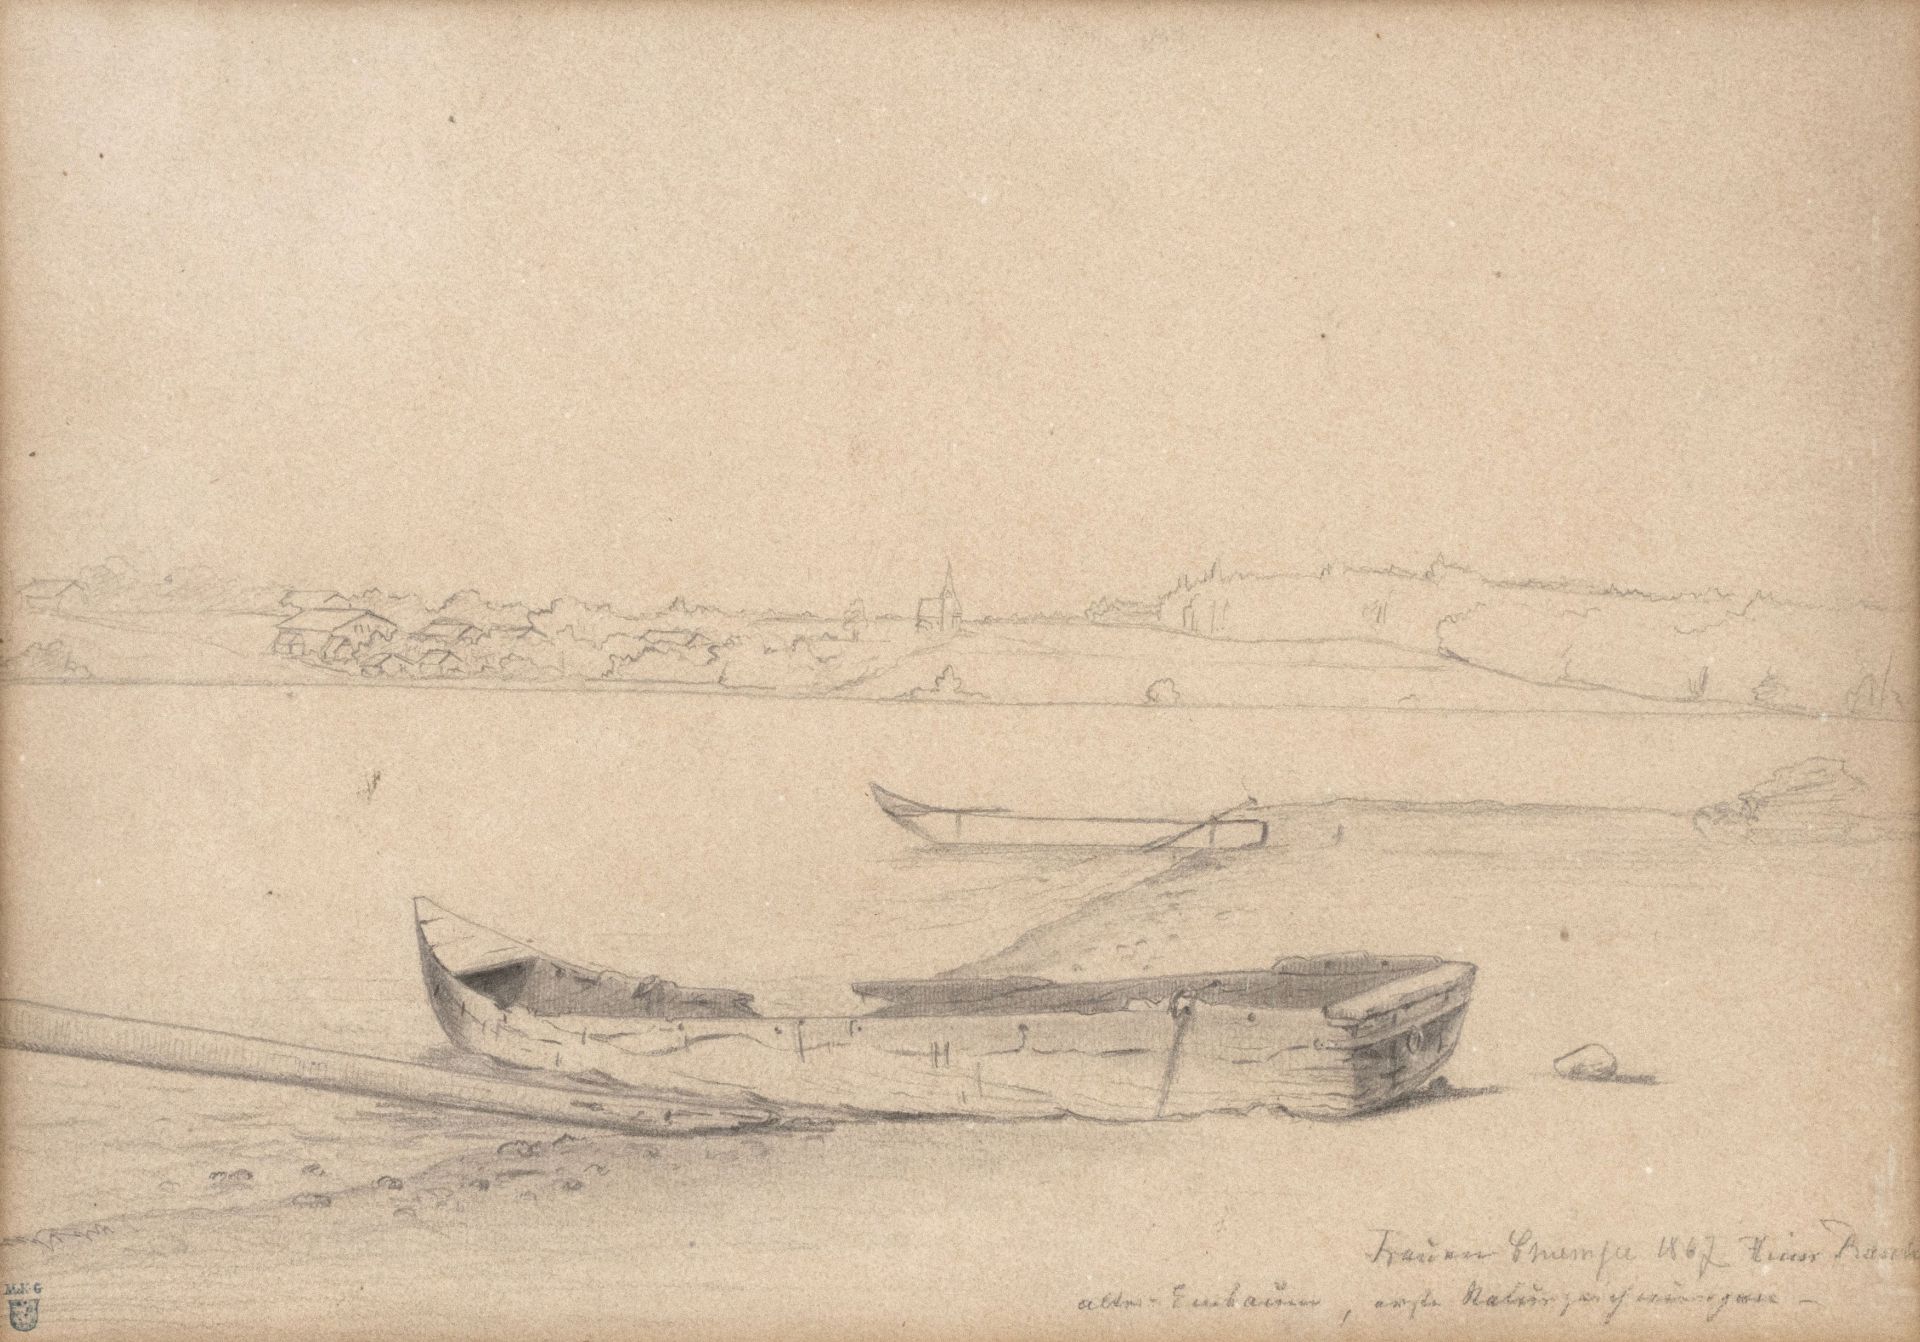 Rasch, Heinrich | 1840 Norburg, Insel Alsen, Dänemark - 1913 Coburg - Bild 3 aus 4